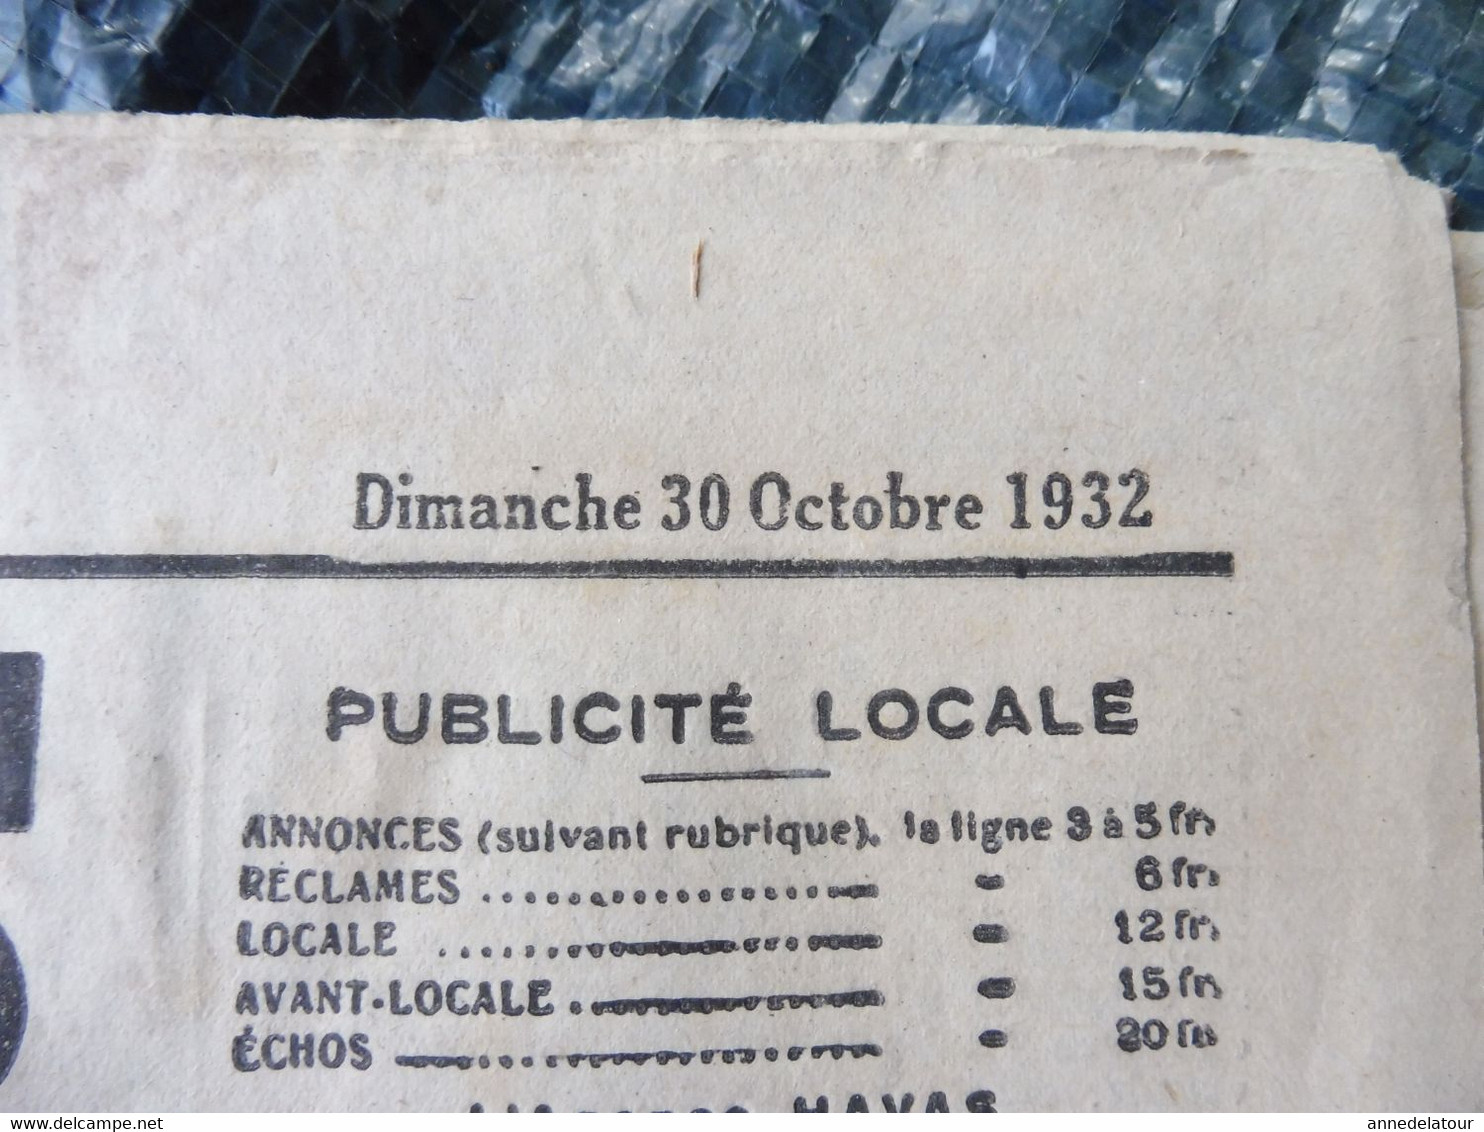 1932 LE PROGRES : Plein Succès Du Lancement Du NORMANDIE ;  Négociation Dans Les Partis Prolétariens ; Publicité ; Etc - Testi Generali